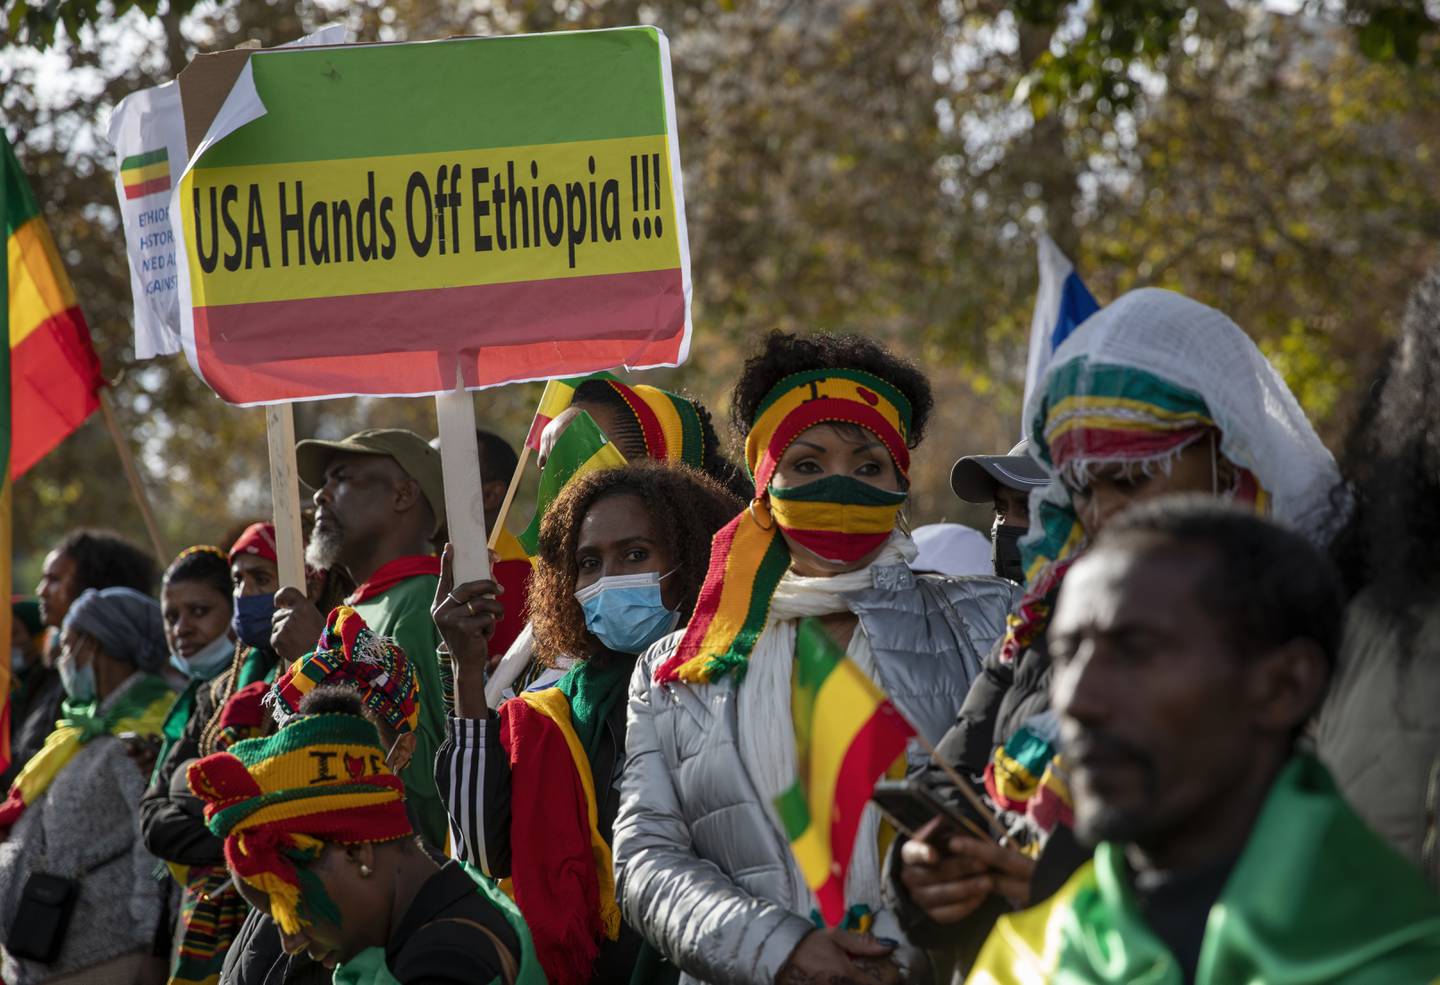 HANDS OFF: De siste ukene har det vært store demonstrasjoner over hele den vestlige verden mot det flere etiopere opplever som vestlig innblanding. På sosiale medier er bildene mange under emneknaggen #nomore. På de store store byråene er bildene færre. Her ser vi demonstrasjon i Israel  21. november 2021.